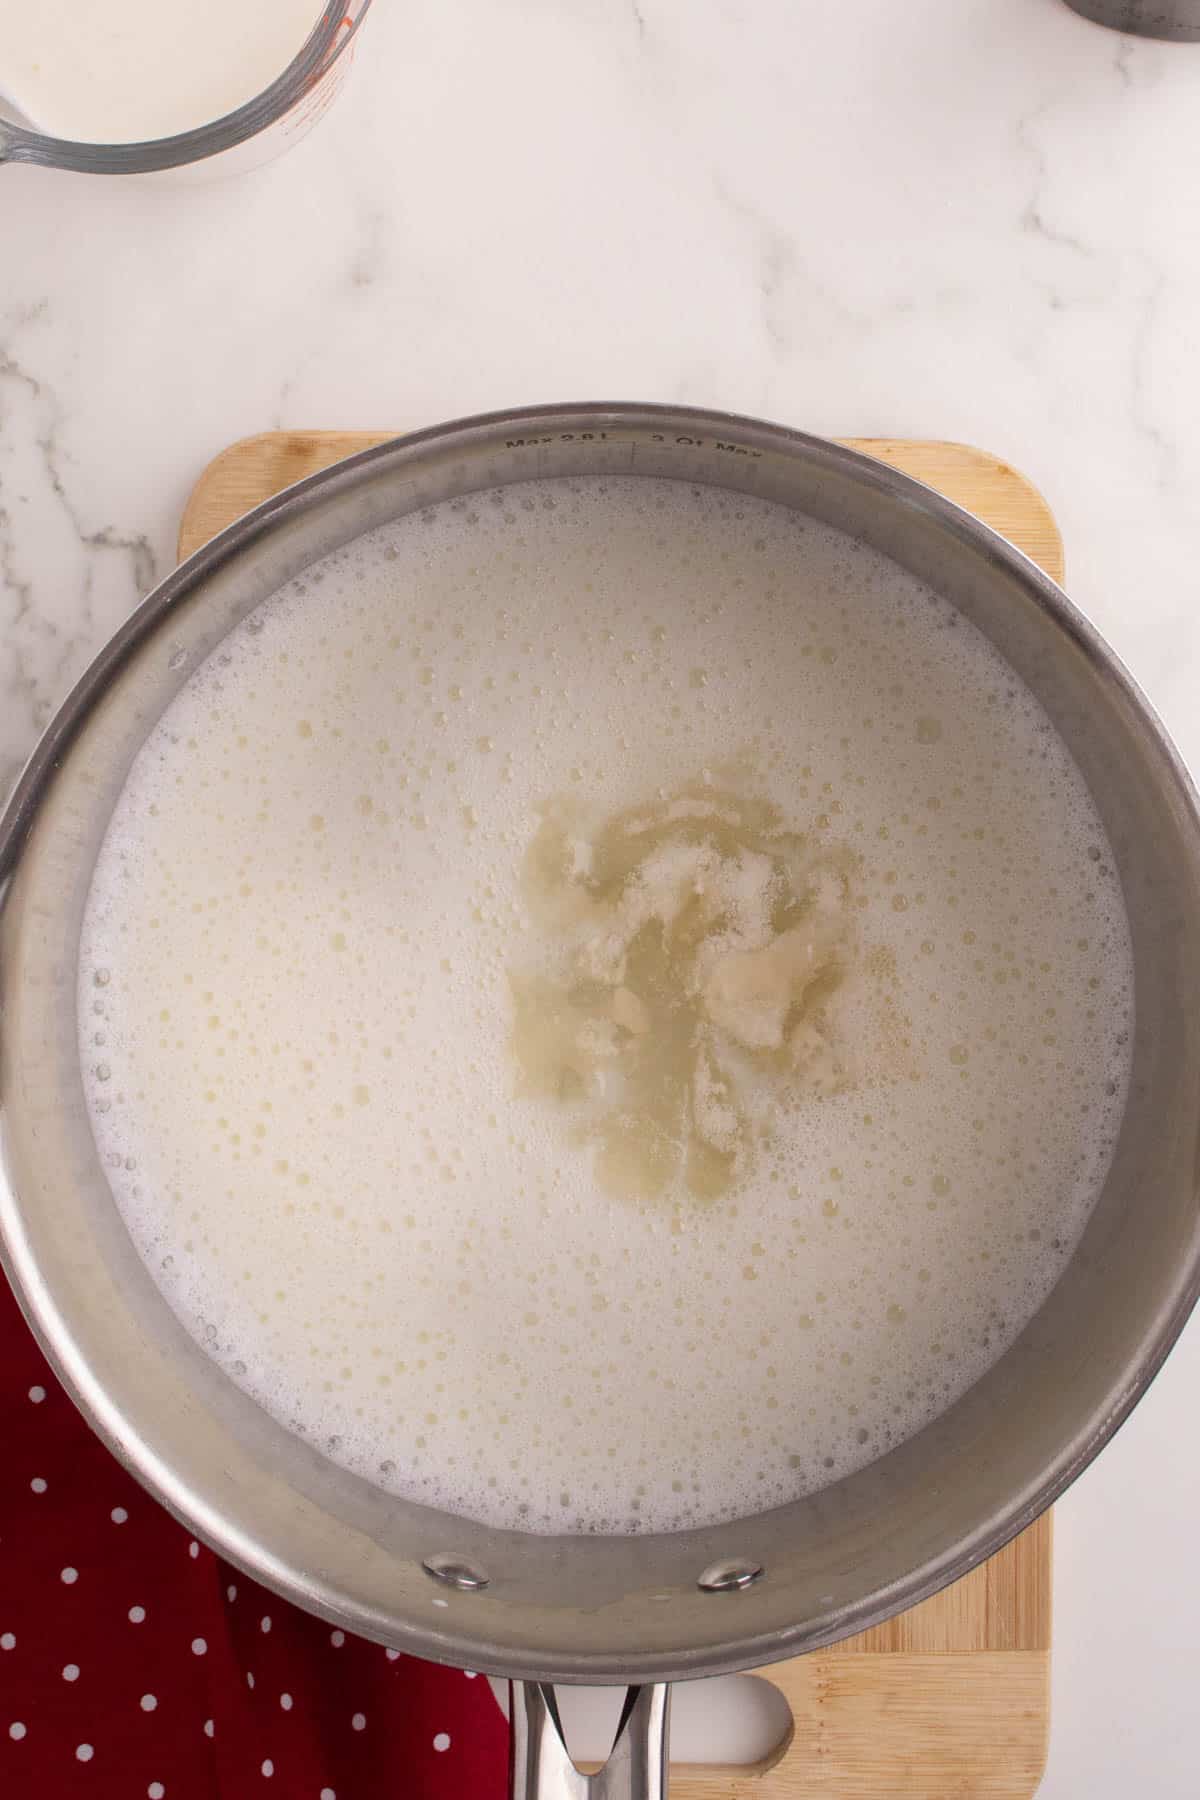 Adding dissolved gelatin to warm sugar and milk mixture in a pot.